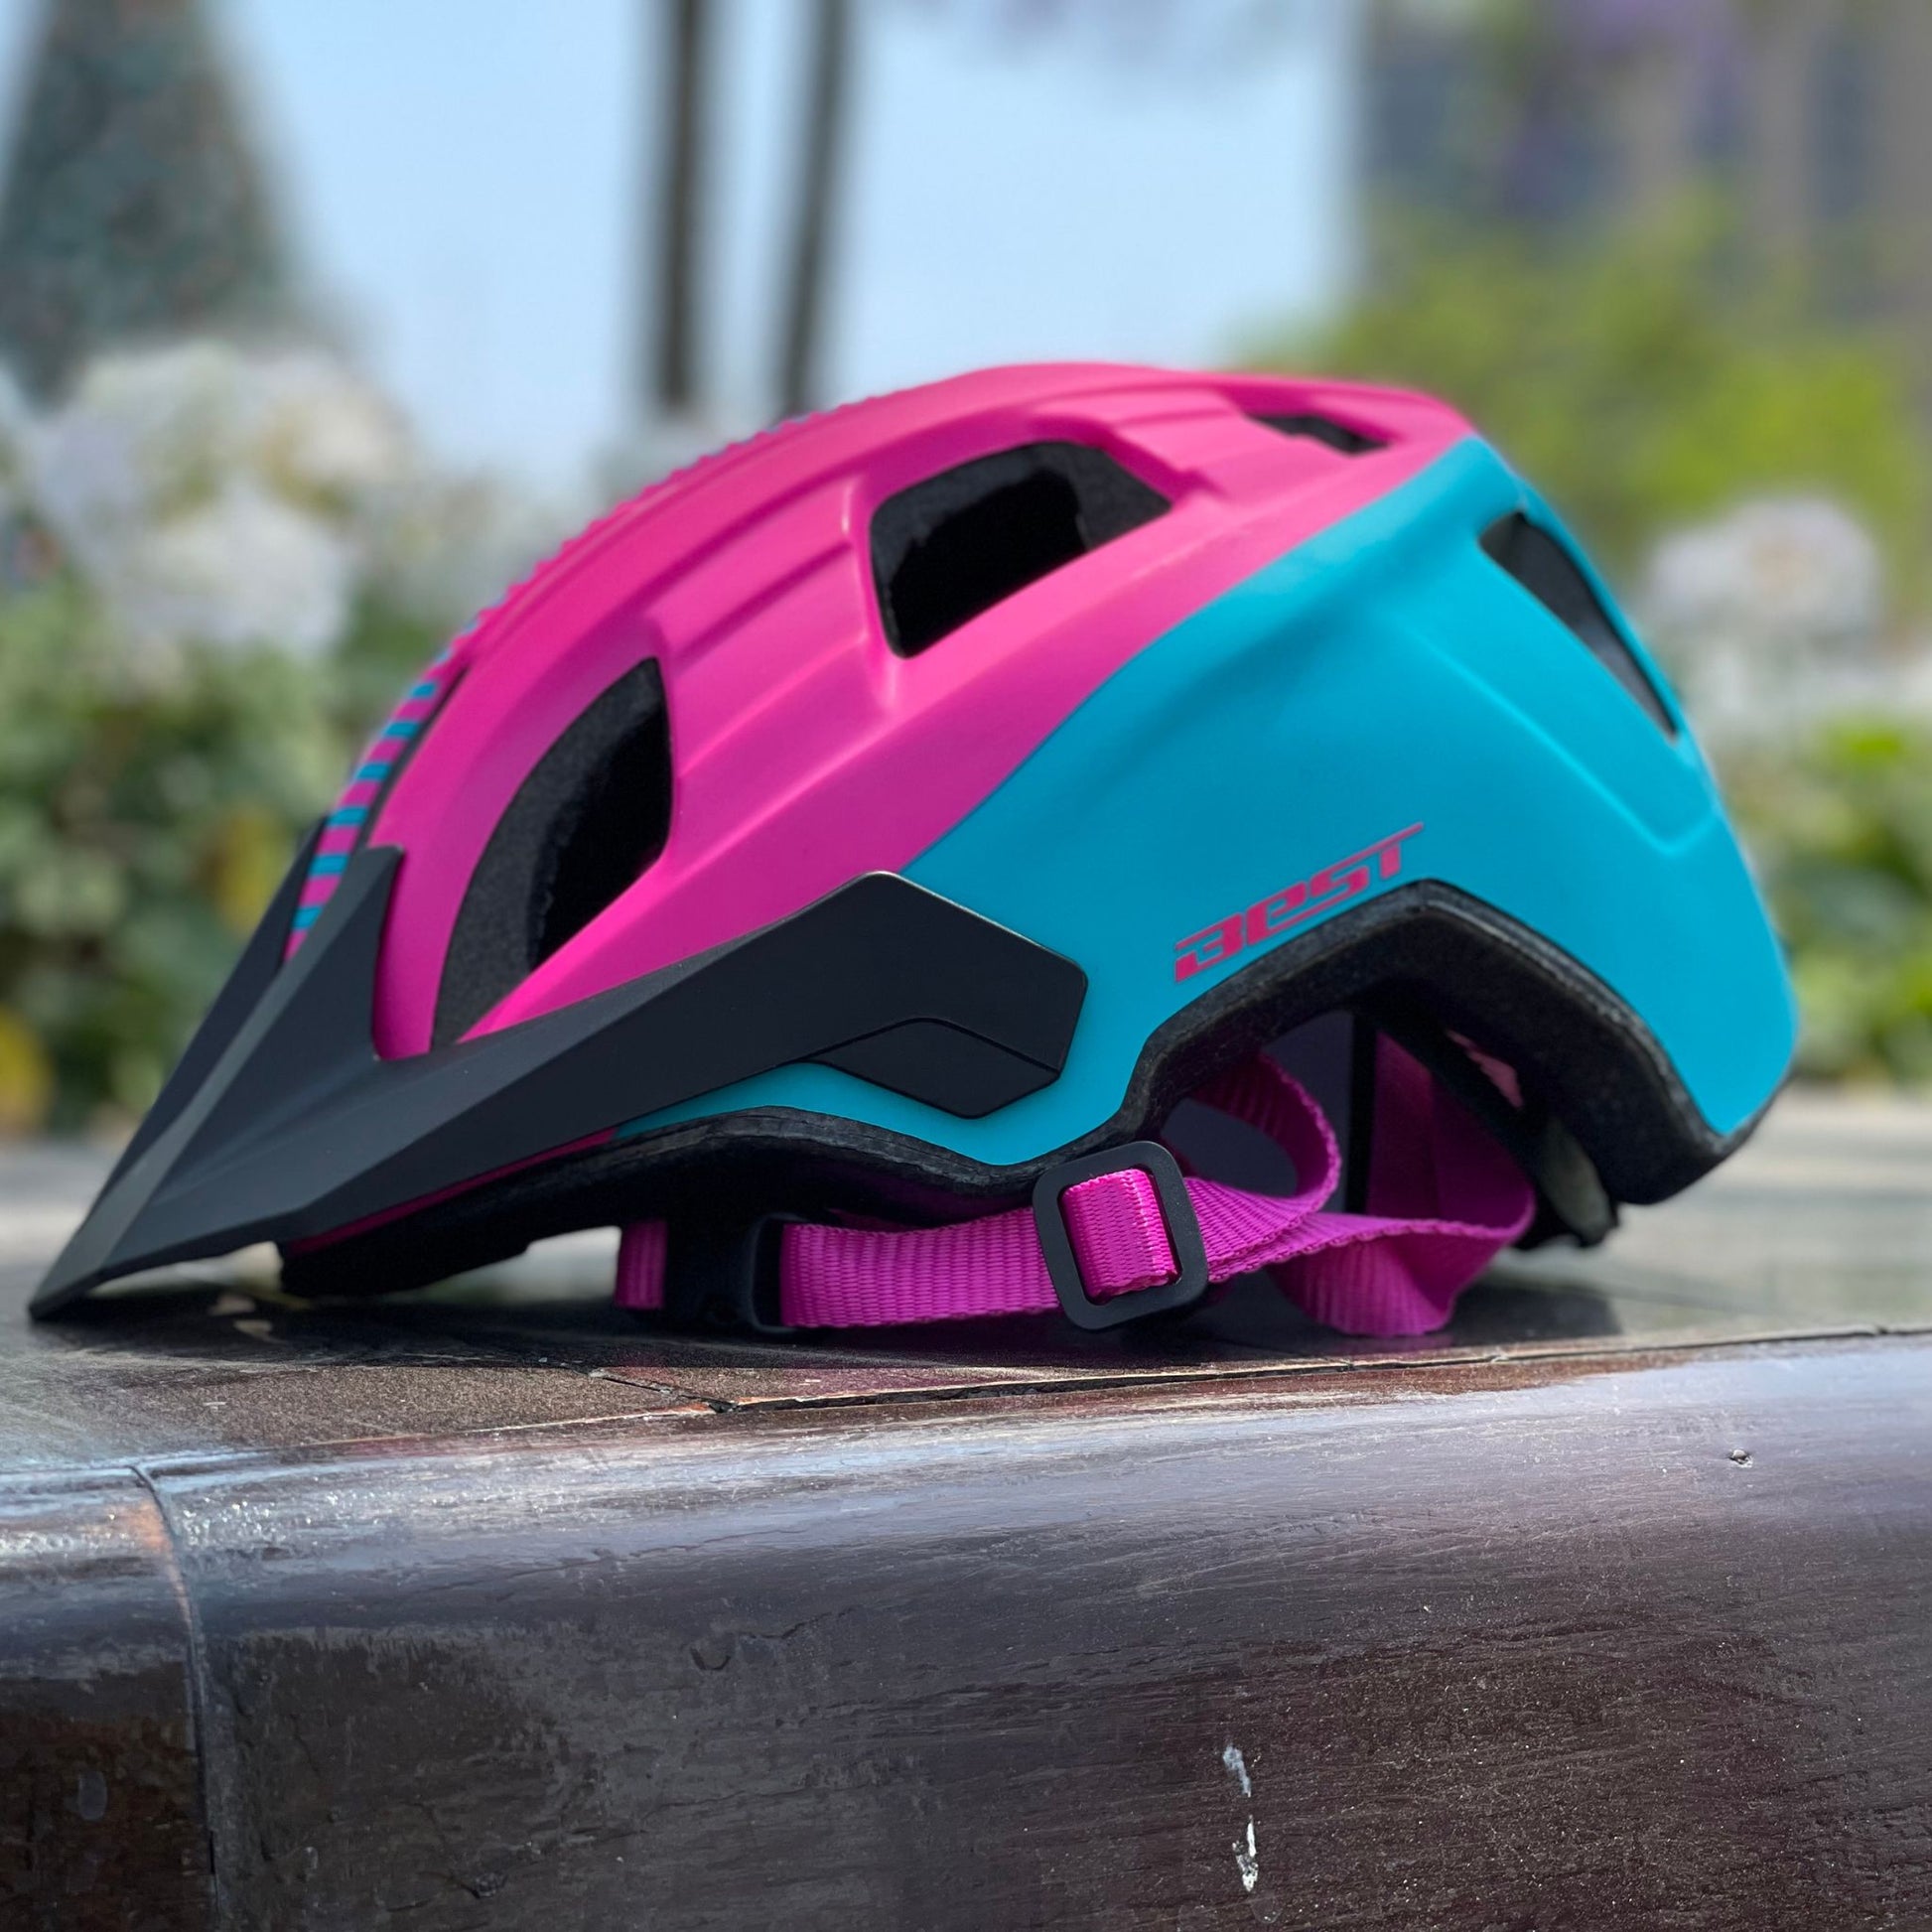 Casco para Dama BEST en colores rosa y azul, mostrado de lado, ideal para ciclismo y scooter, con diseño aerodinámico y seguro.